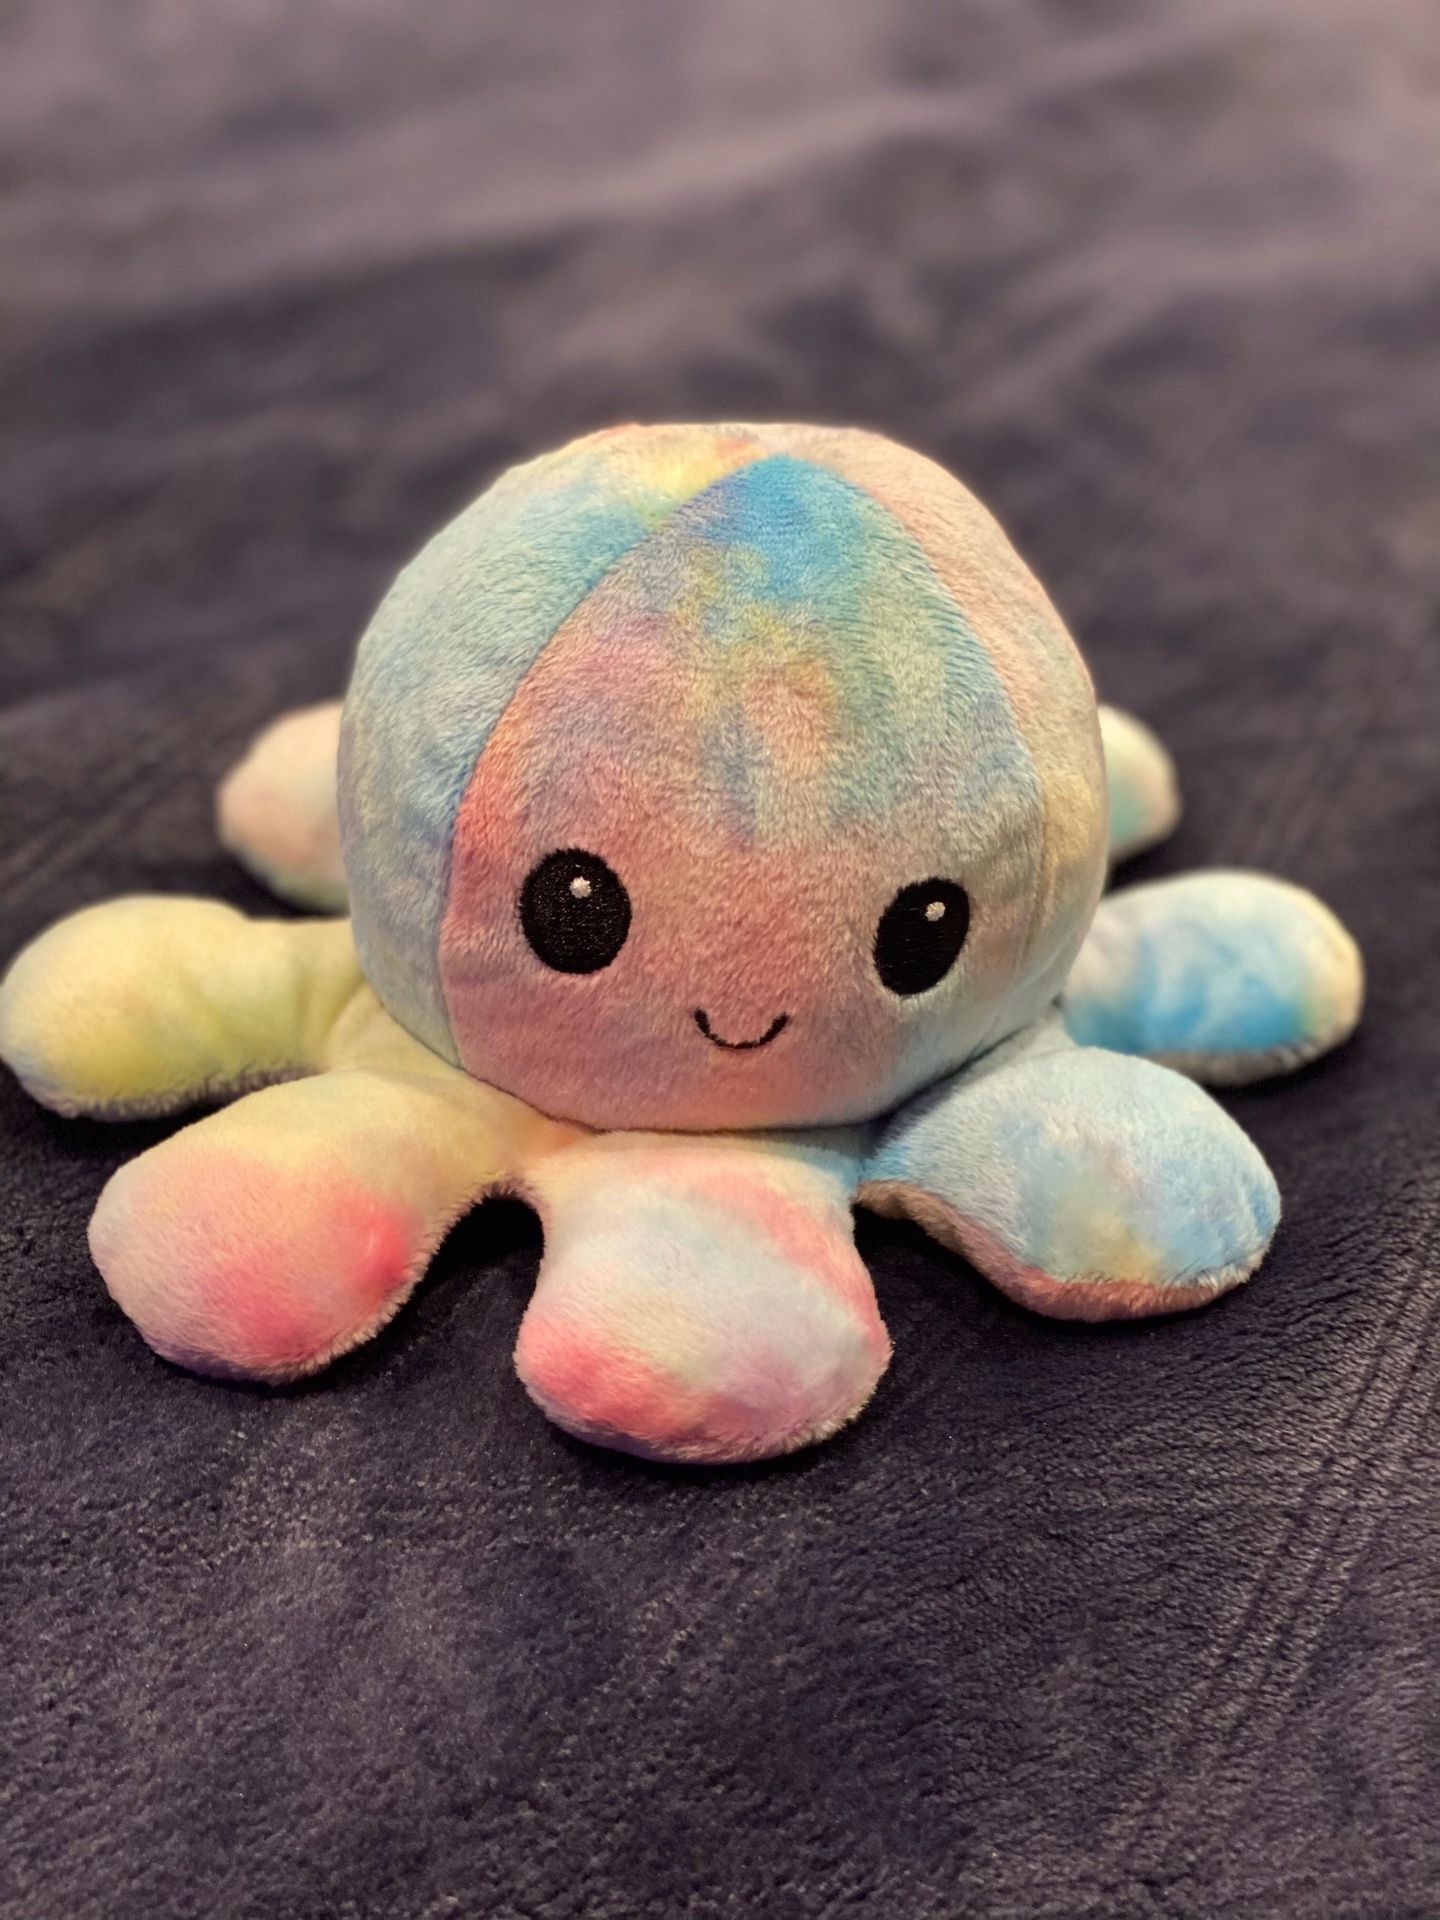 Plush toy octopus teddy bear beanie babies